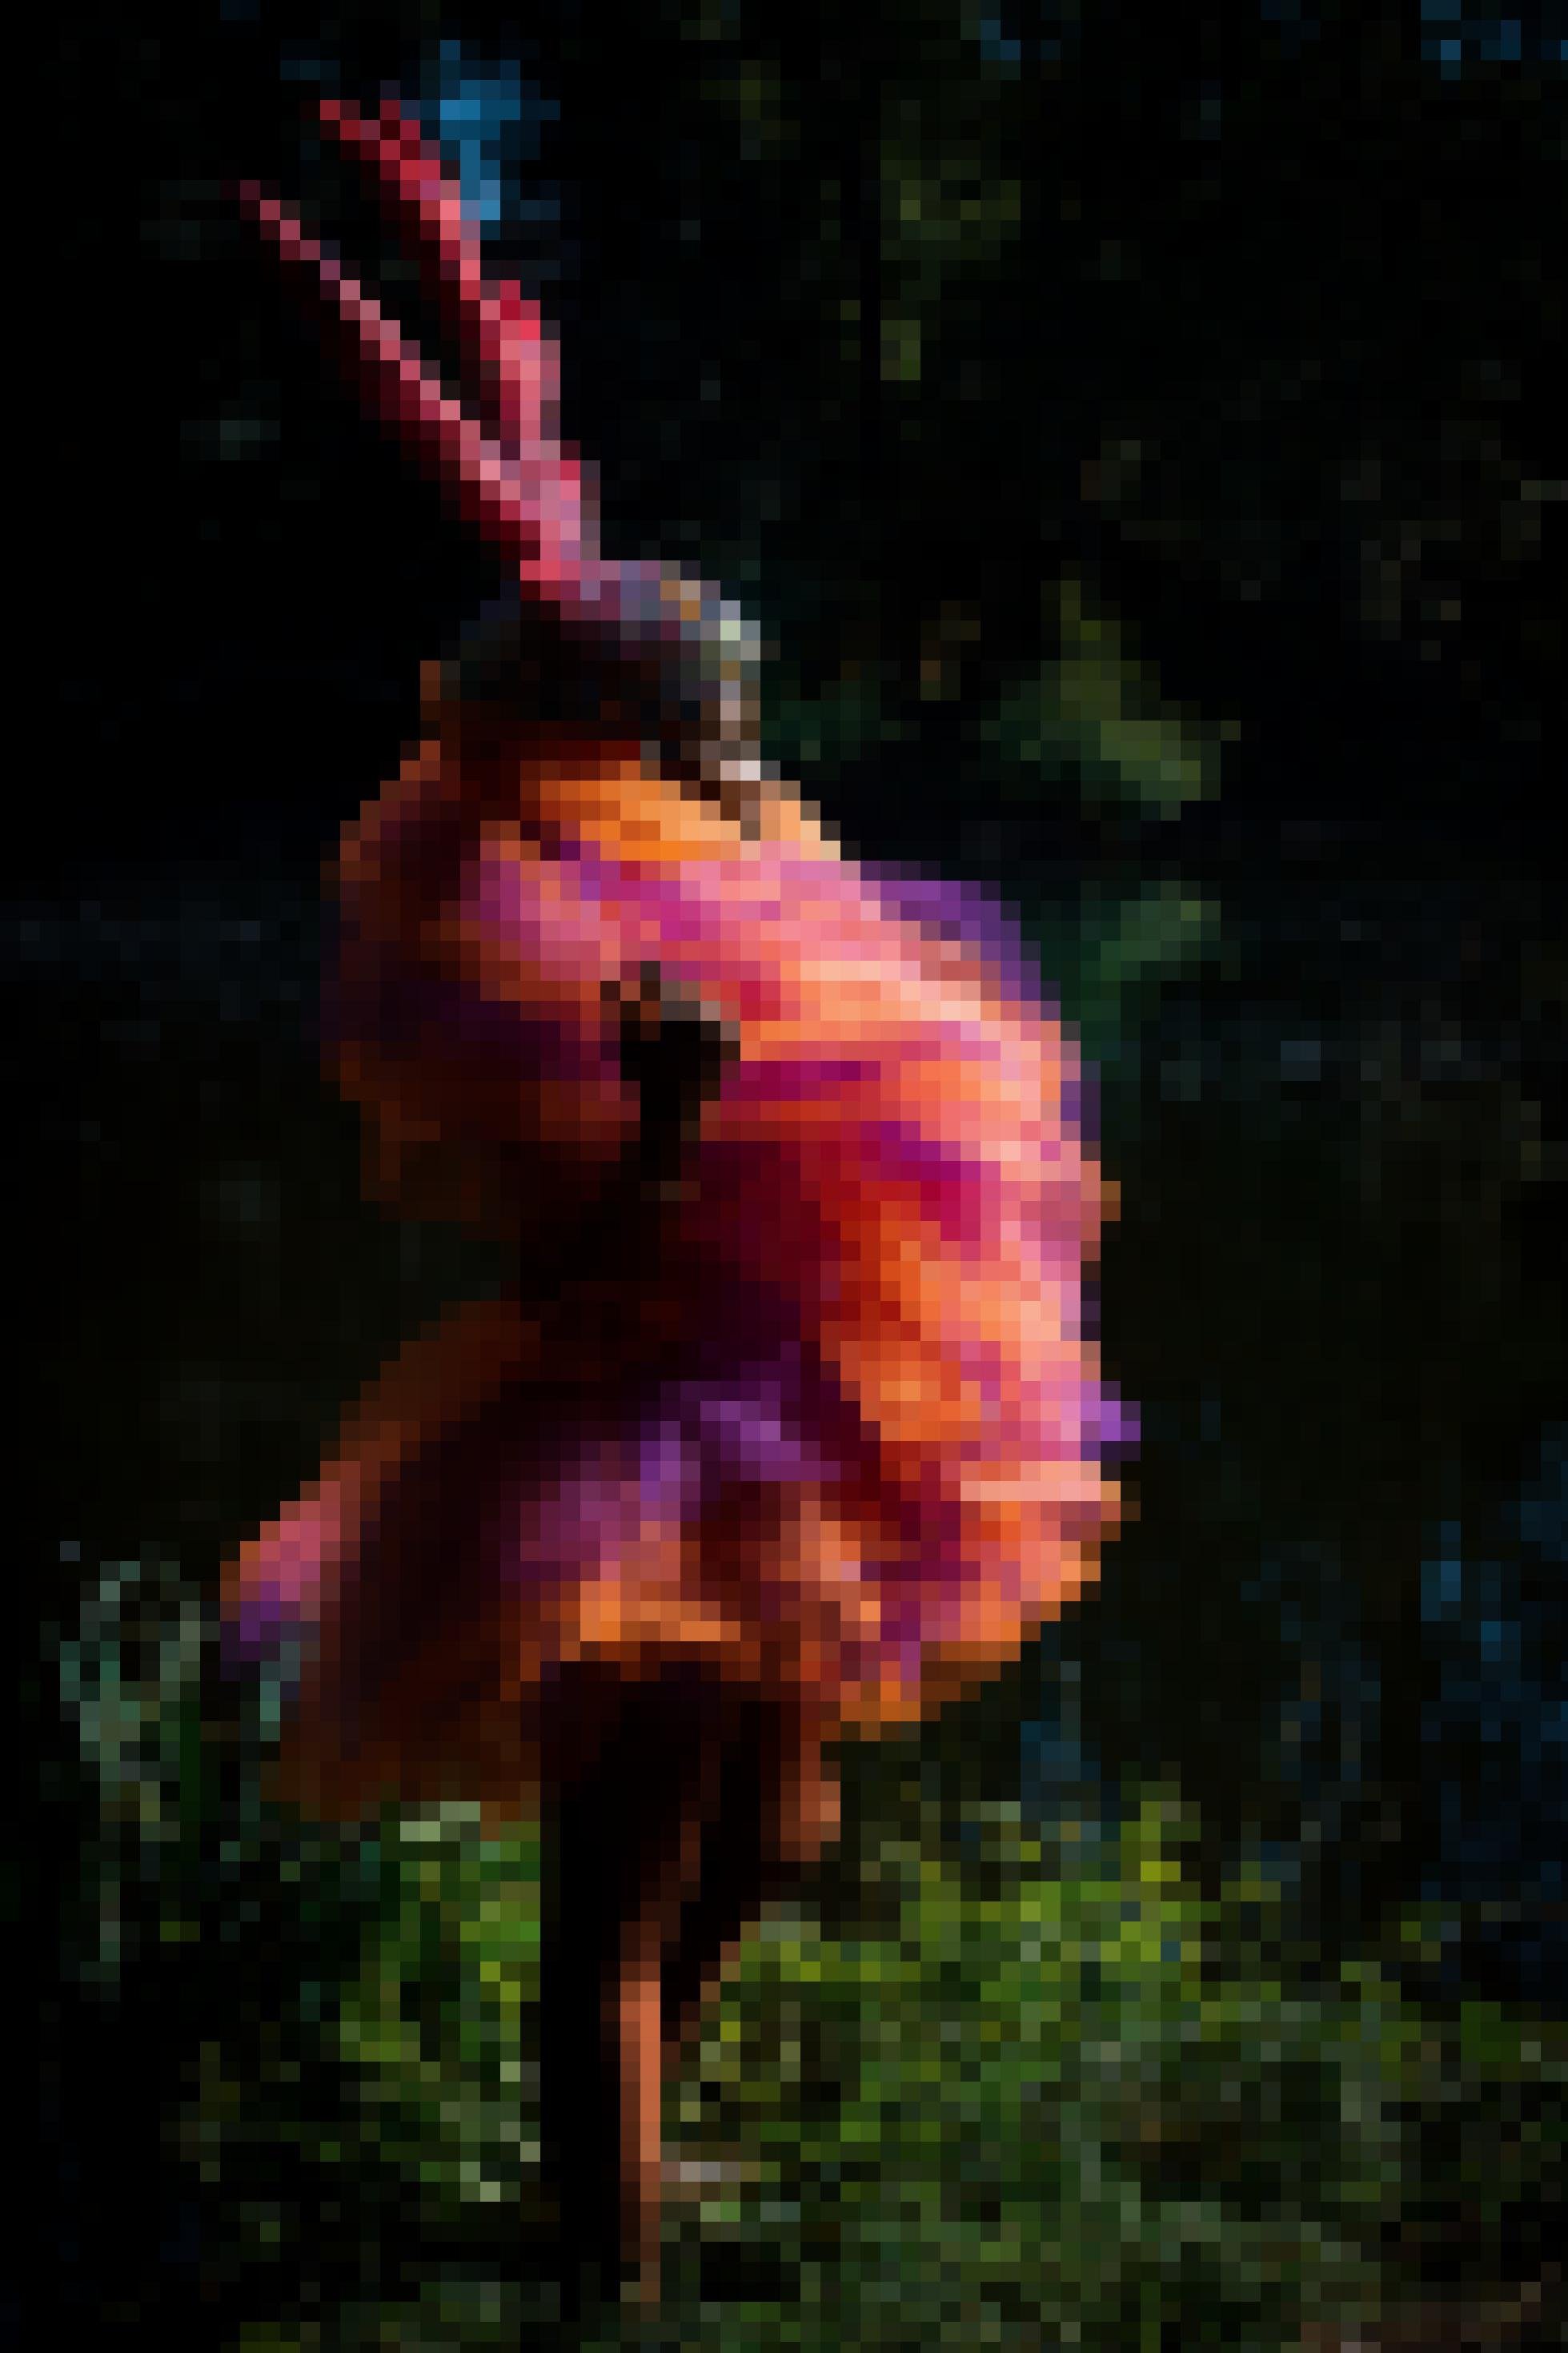 Eine Frau steht in einem prachtvollen rot-violetten Kostüm im Wald und blickt nach rechts. Hinter ihr ist es sehr dunkel, nur das Gras zu ihren Füßen zeigt ein saftvolles Grün. Sie trägt einen Helm mit einem Geweih, das rötlich schimmert.